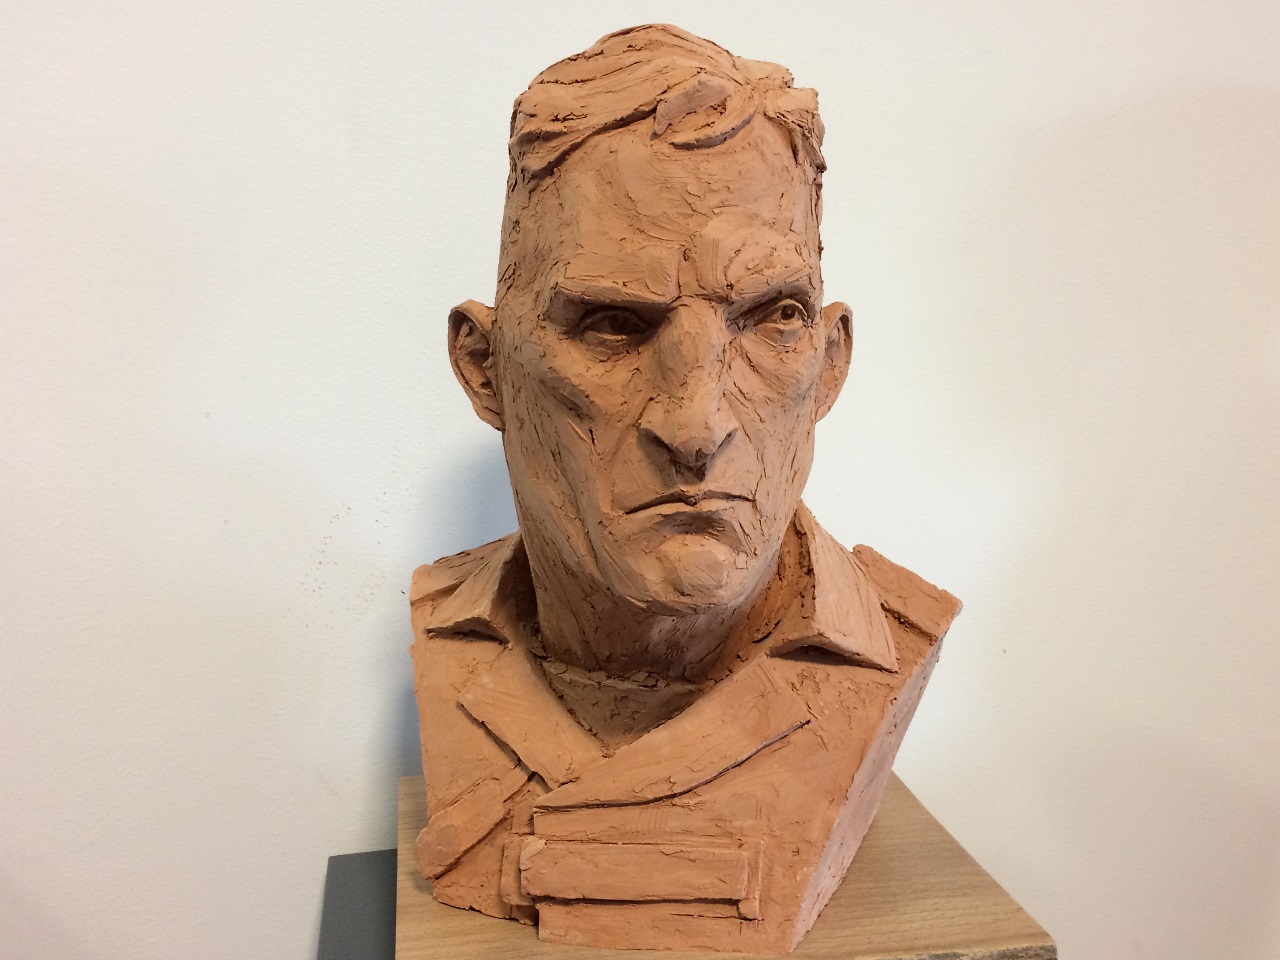 Des personnages sculptés ont ensuite eu droit à participer à une exposition à Paris - LyonMag